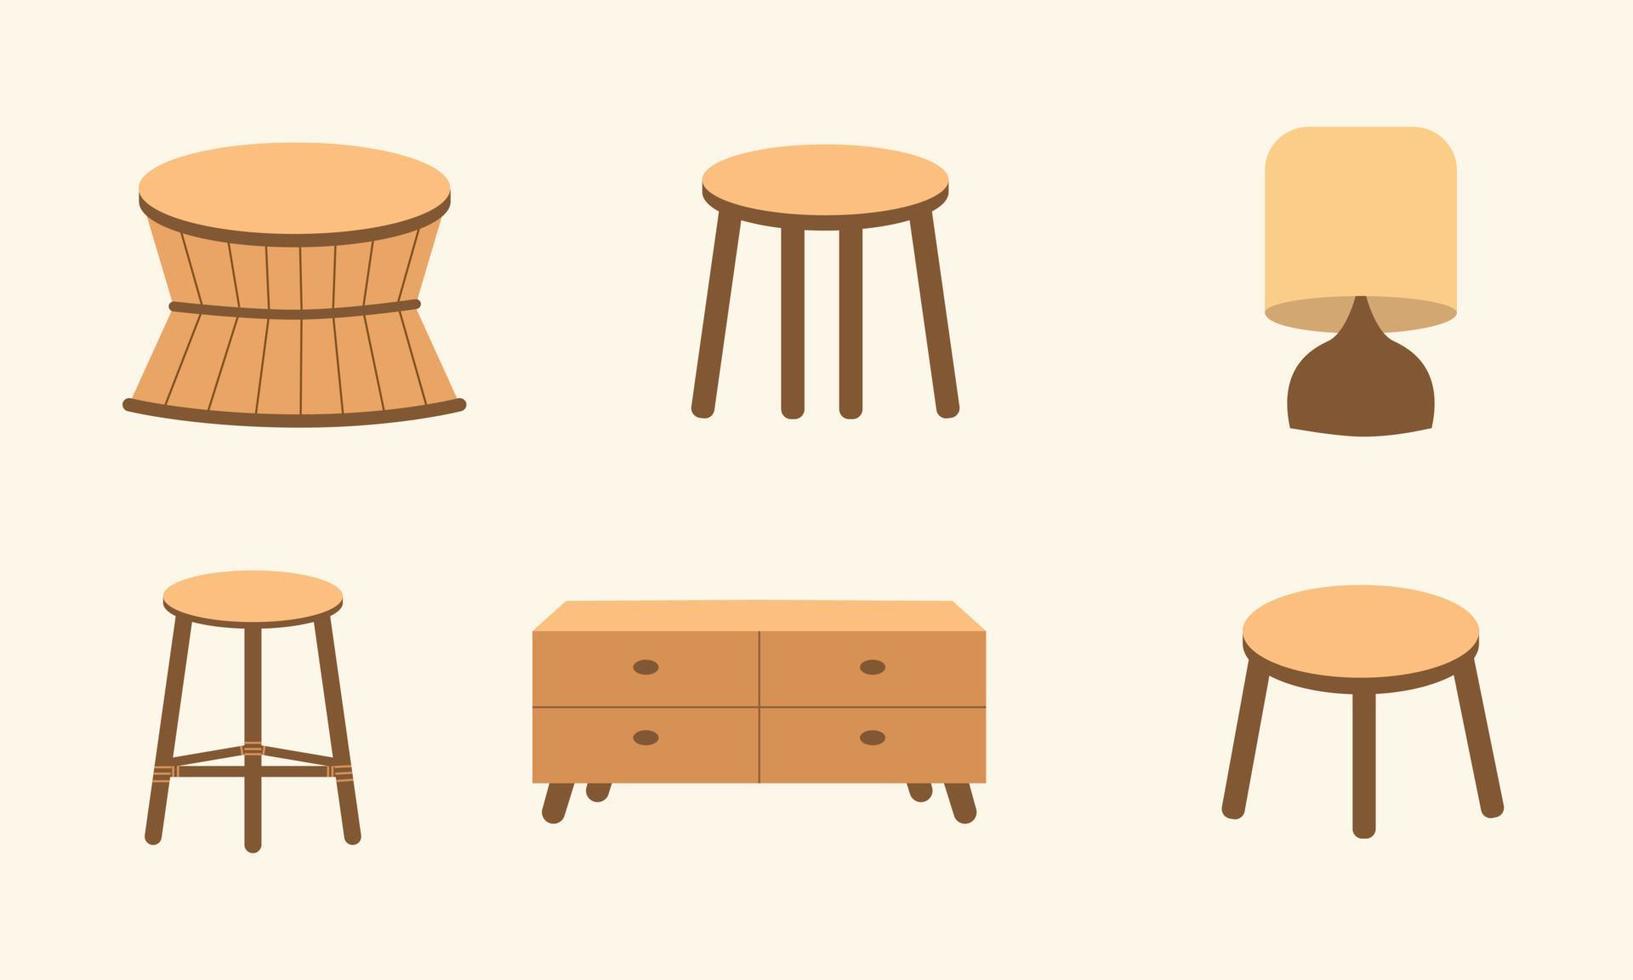 vintagemöbler i boho designstil. bohemiska estetiska illustrationer för designelement. platt design handritade bord, stolar, lampor etc. vektor